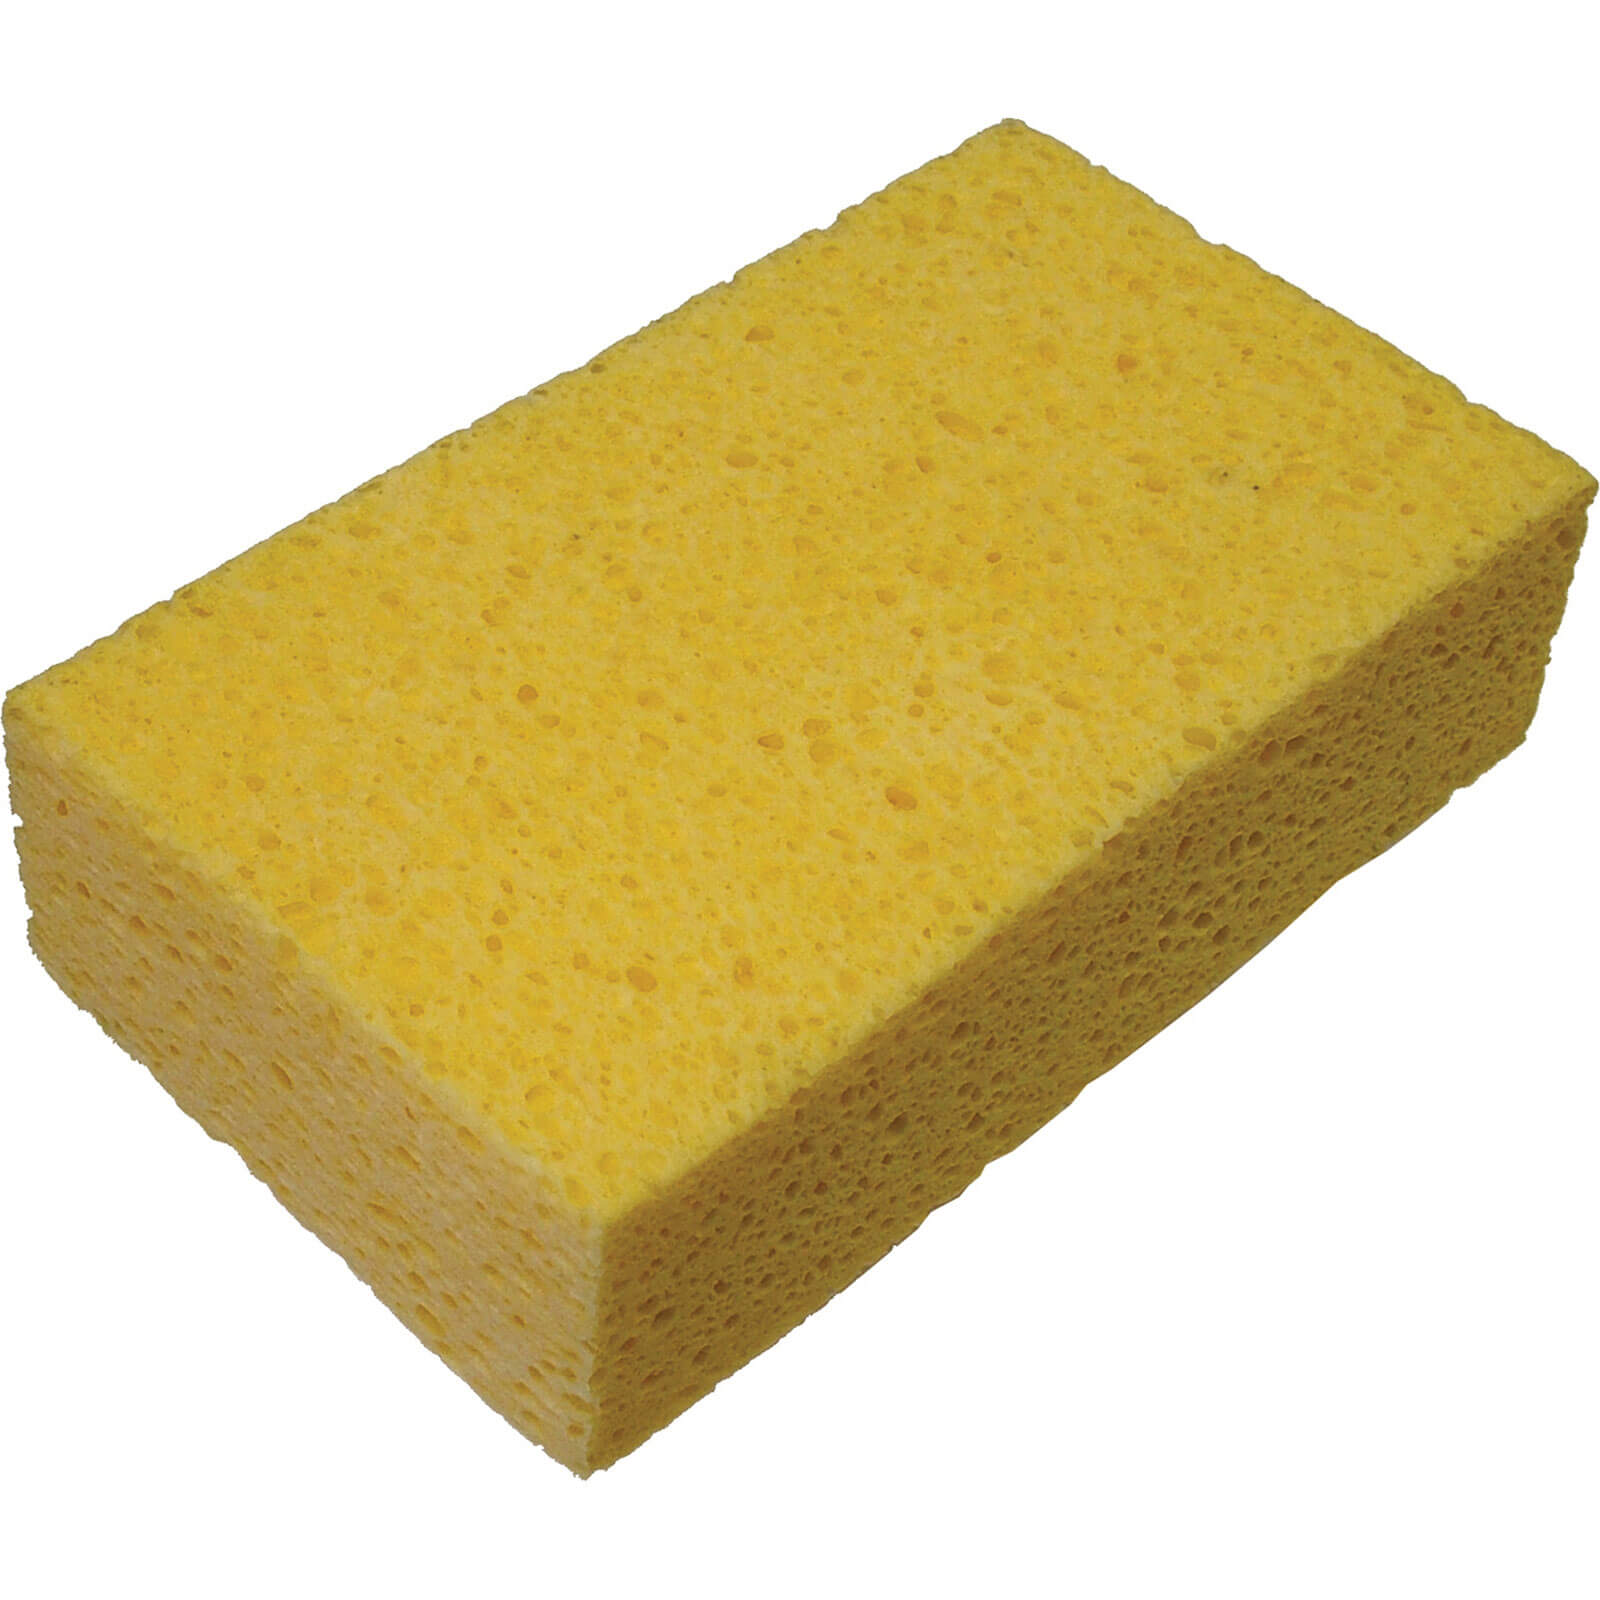 Image of Faithfull Cellulose Sponge